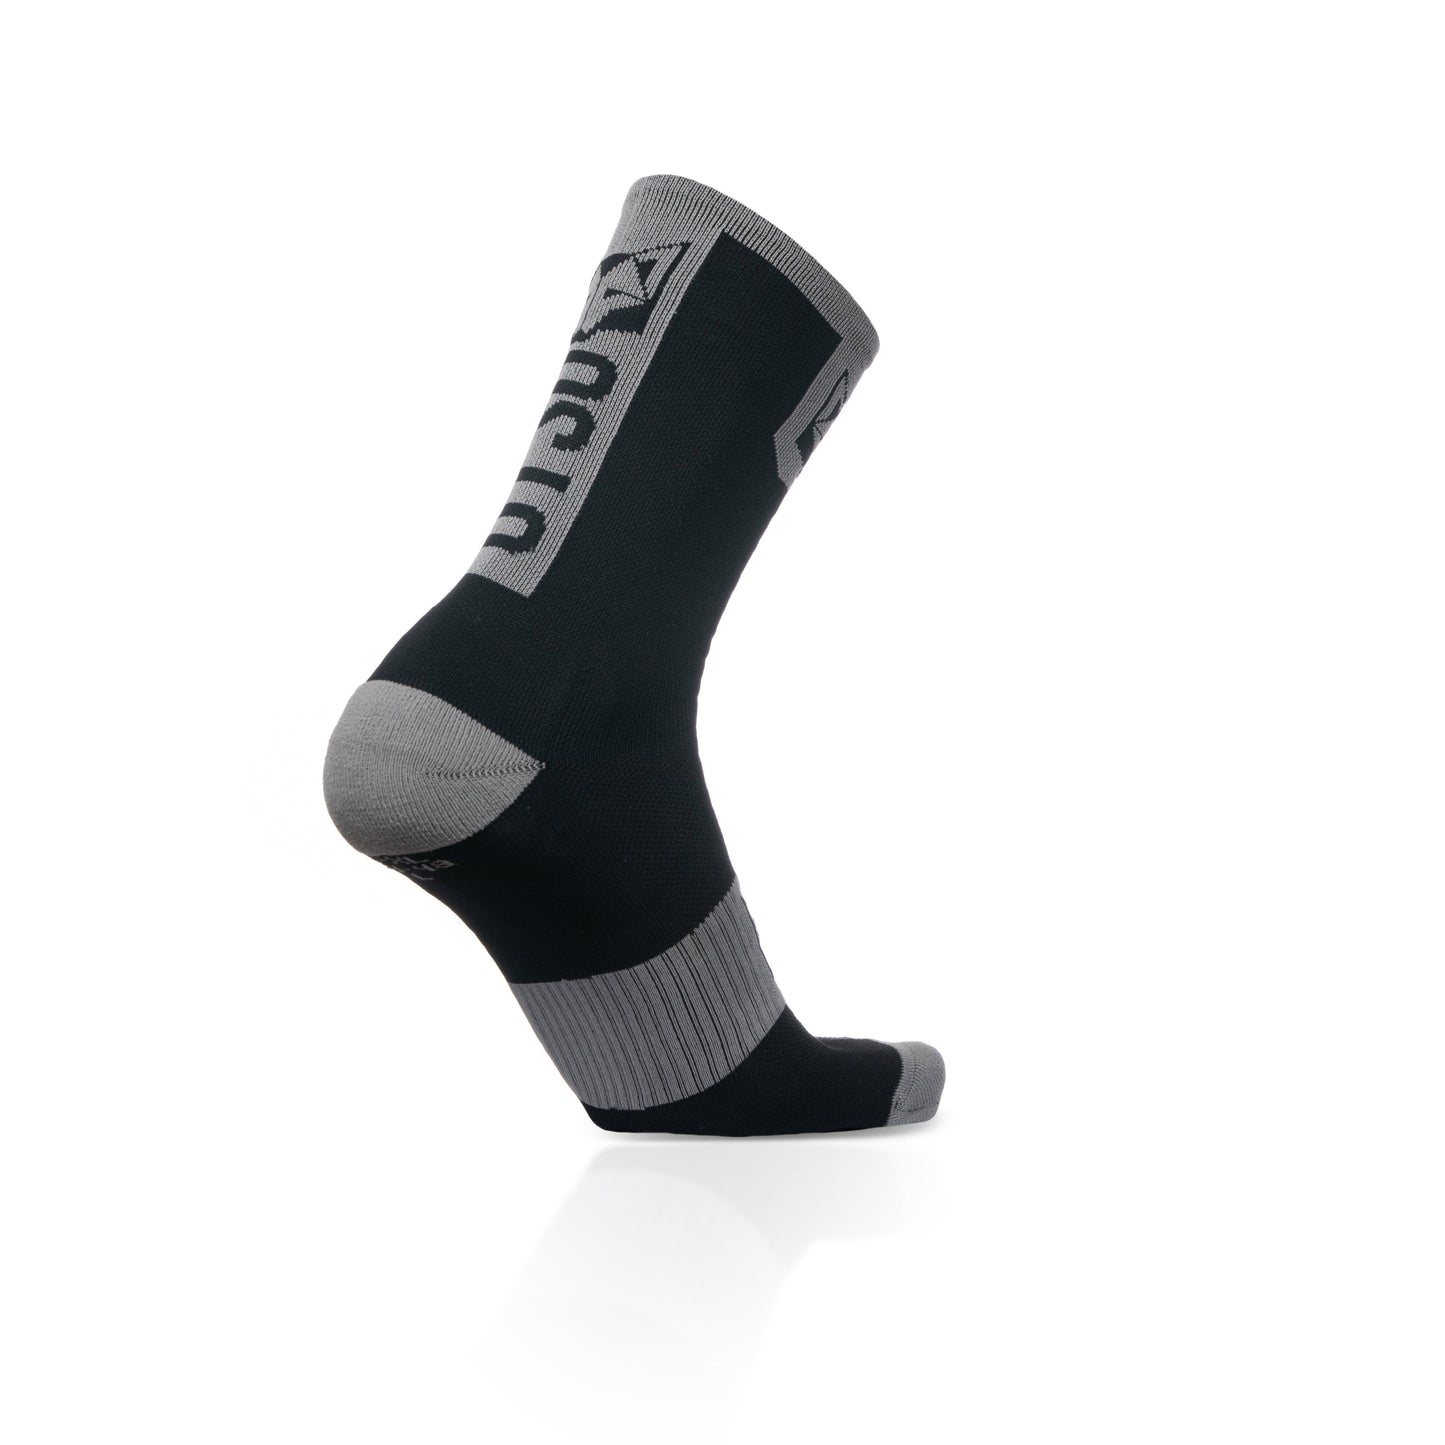 Cycling Socks High Cut Black & Silver Grey